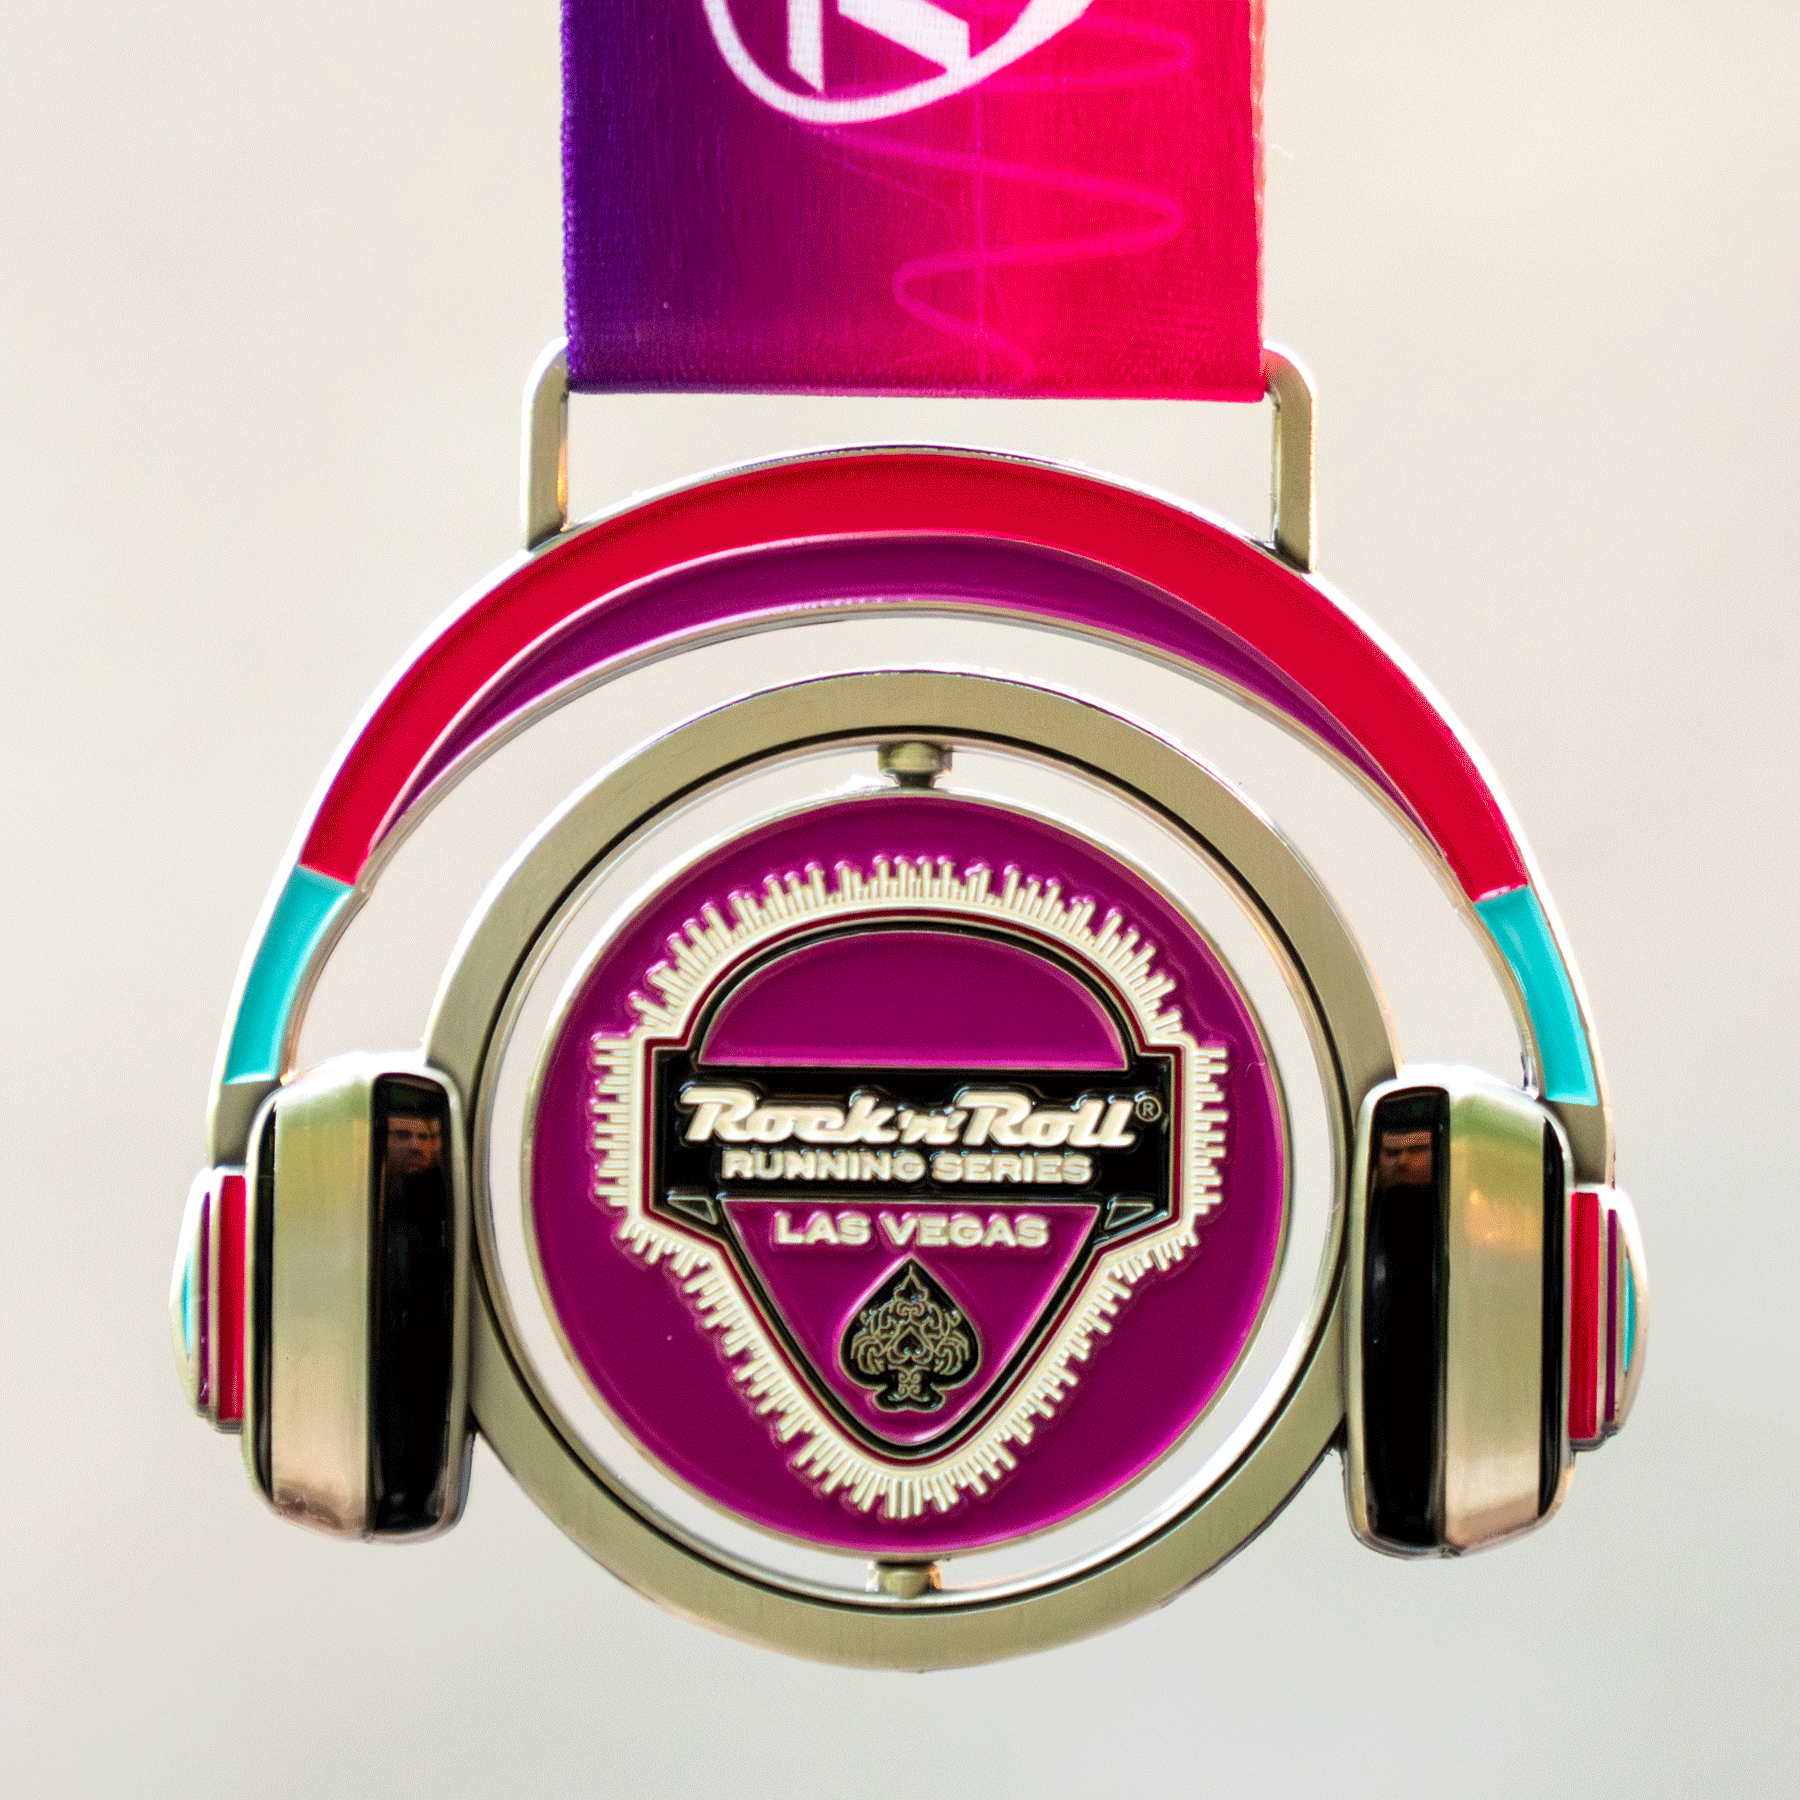 Remix Challenge Medals